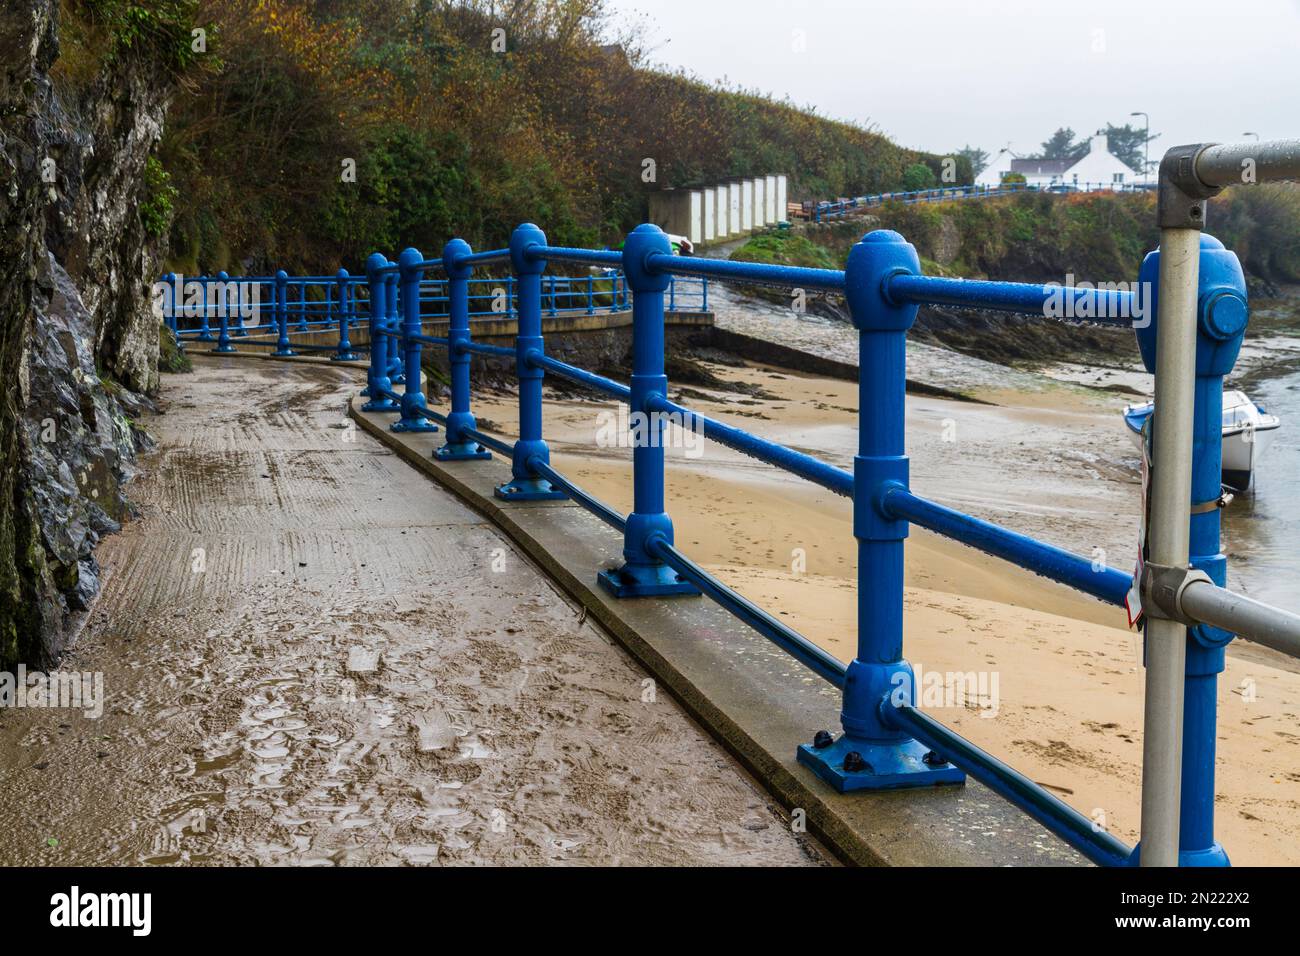 Mains courantes bleues menant d'une plage. Abersoch, Llanengan, Gwynedd, pays de Galles, Royaume-Uni Banque D'Images